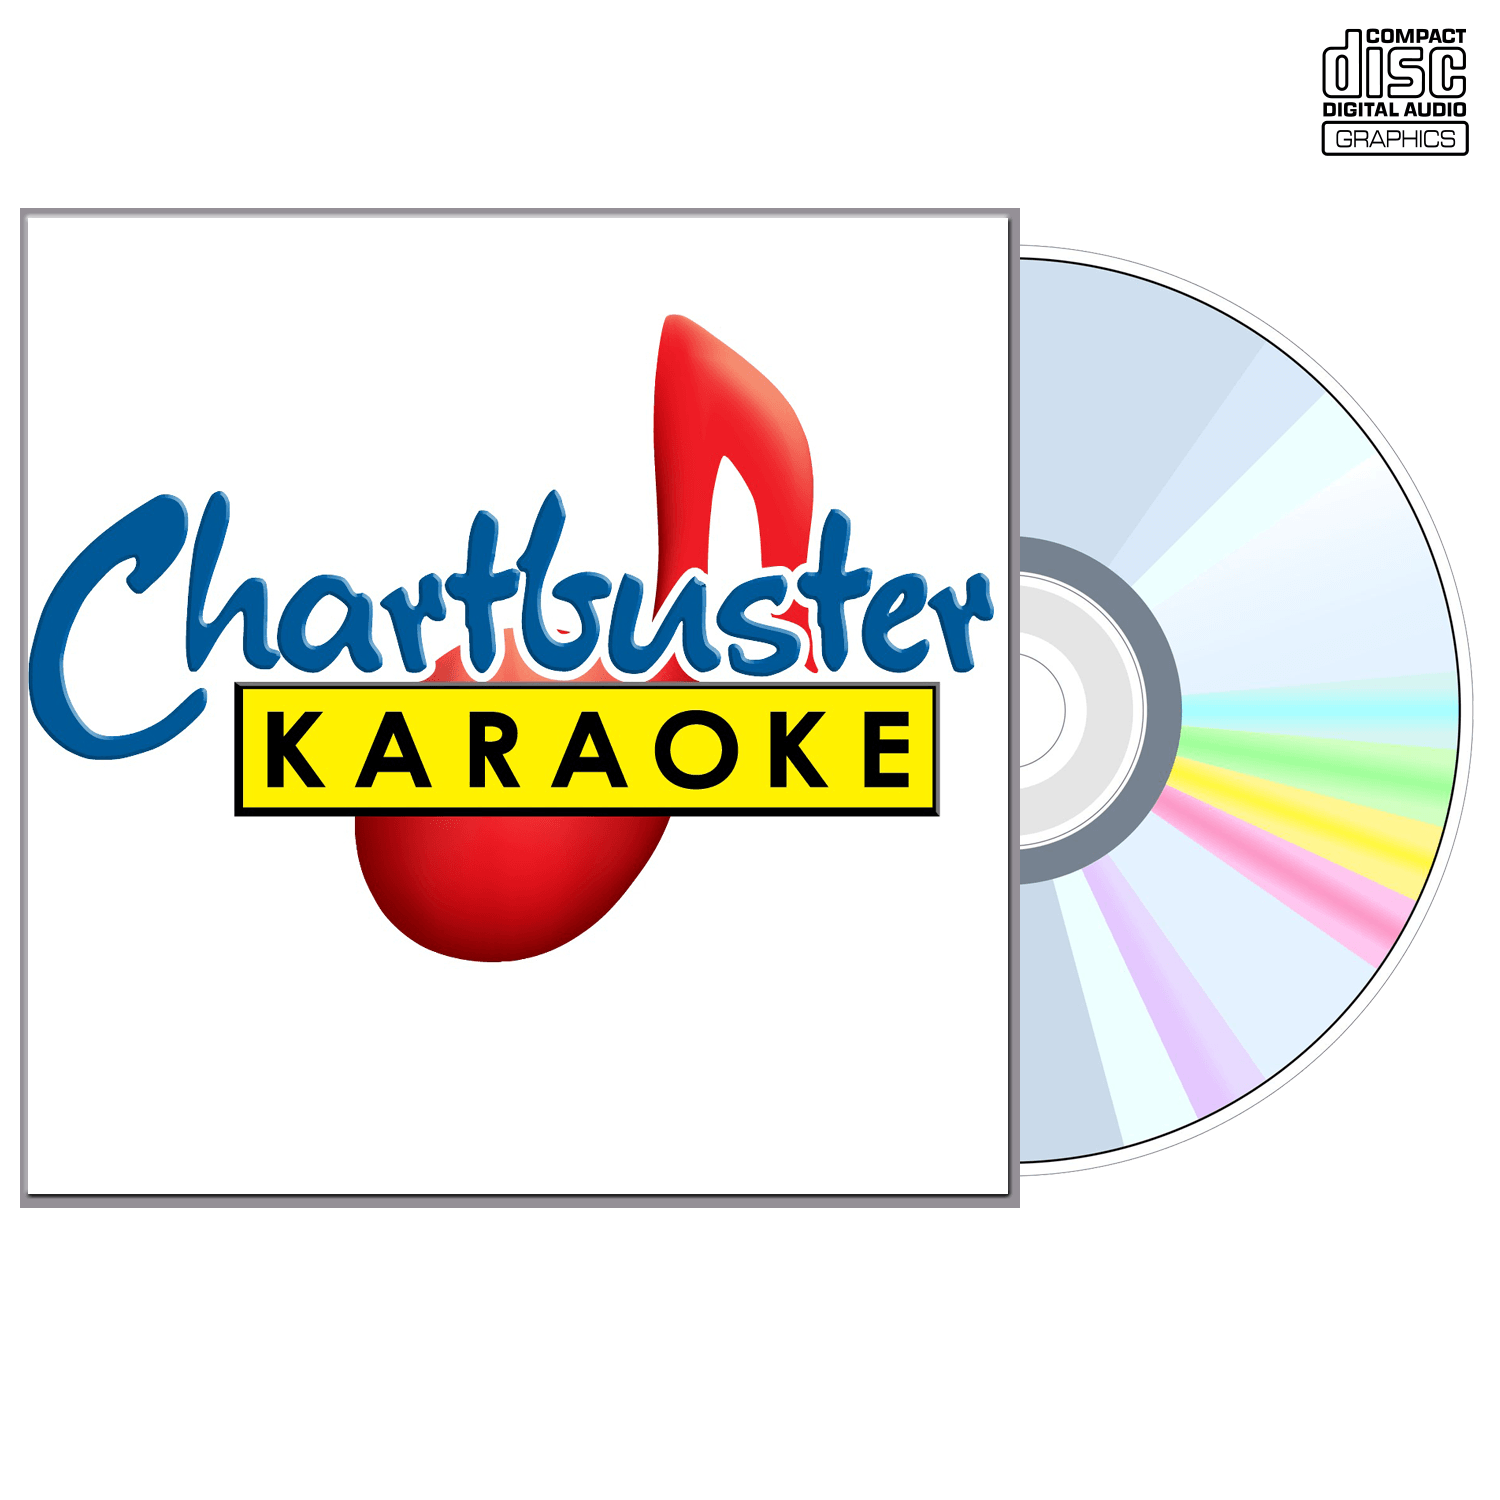 Patsy Cline Vol 1 - CD+G - Chartbuster Karaoke - Karaoke Home Entertainment